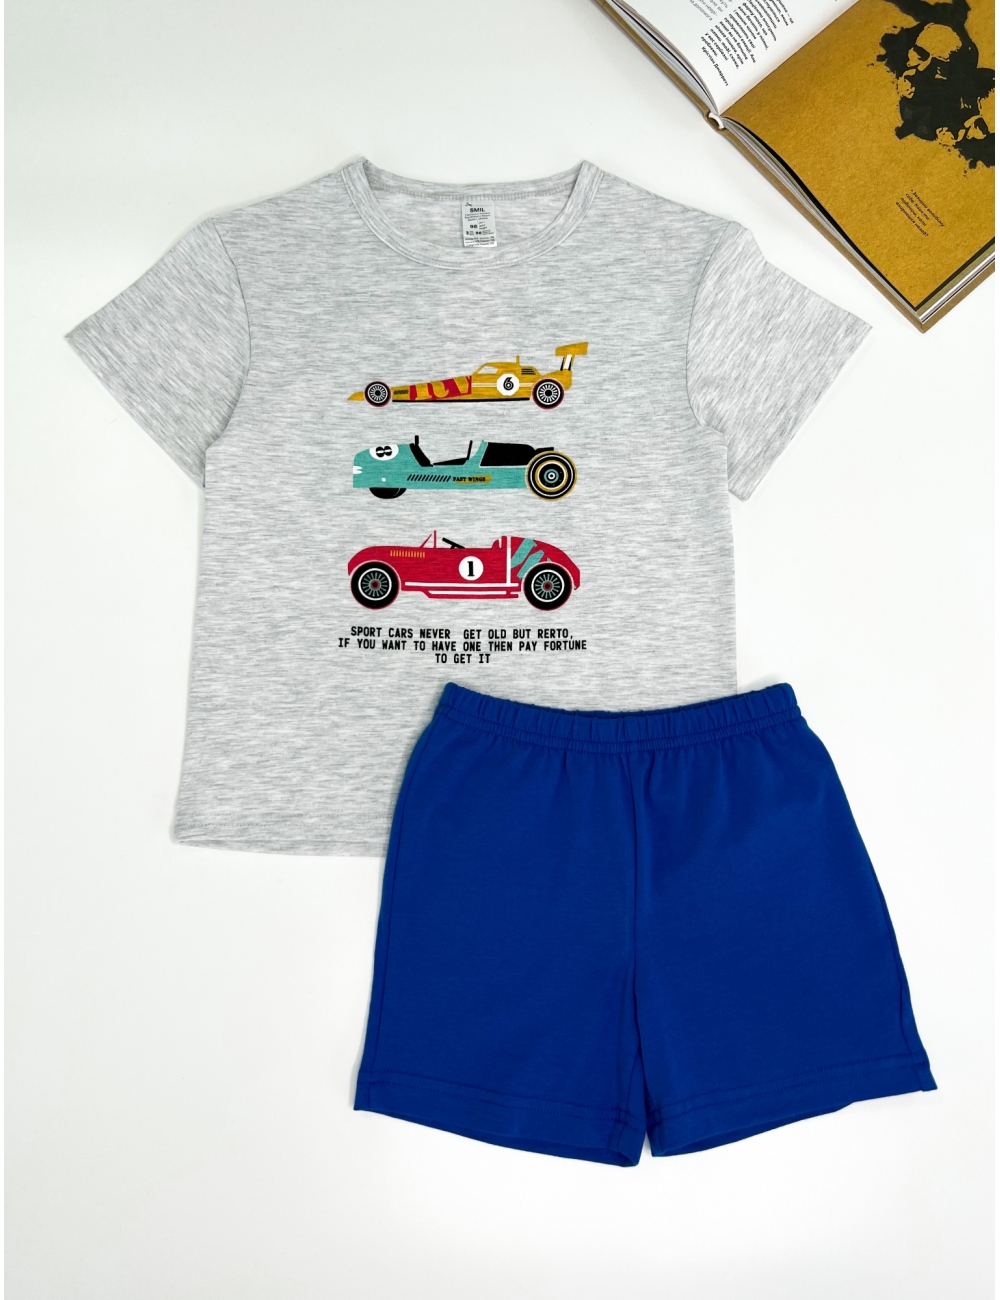 Пижама для мальчиков тм "Smil" Sport cars